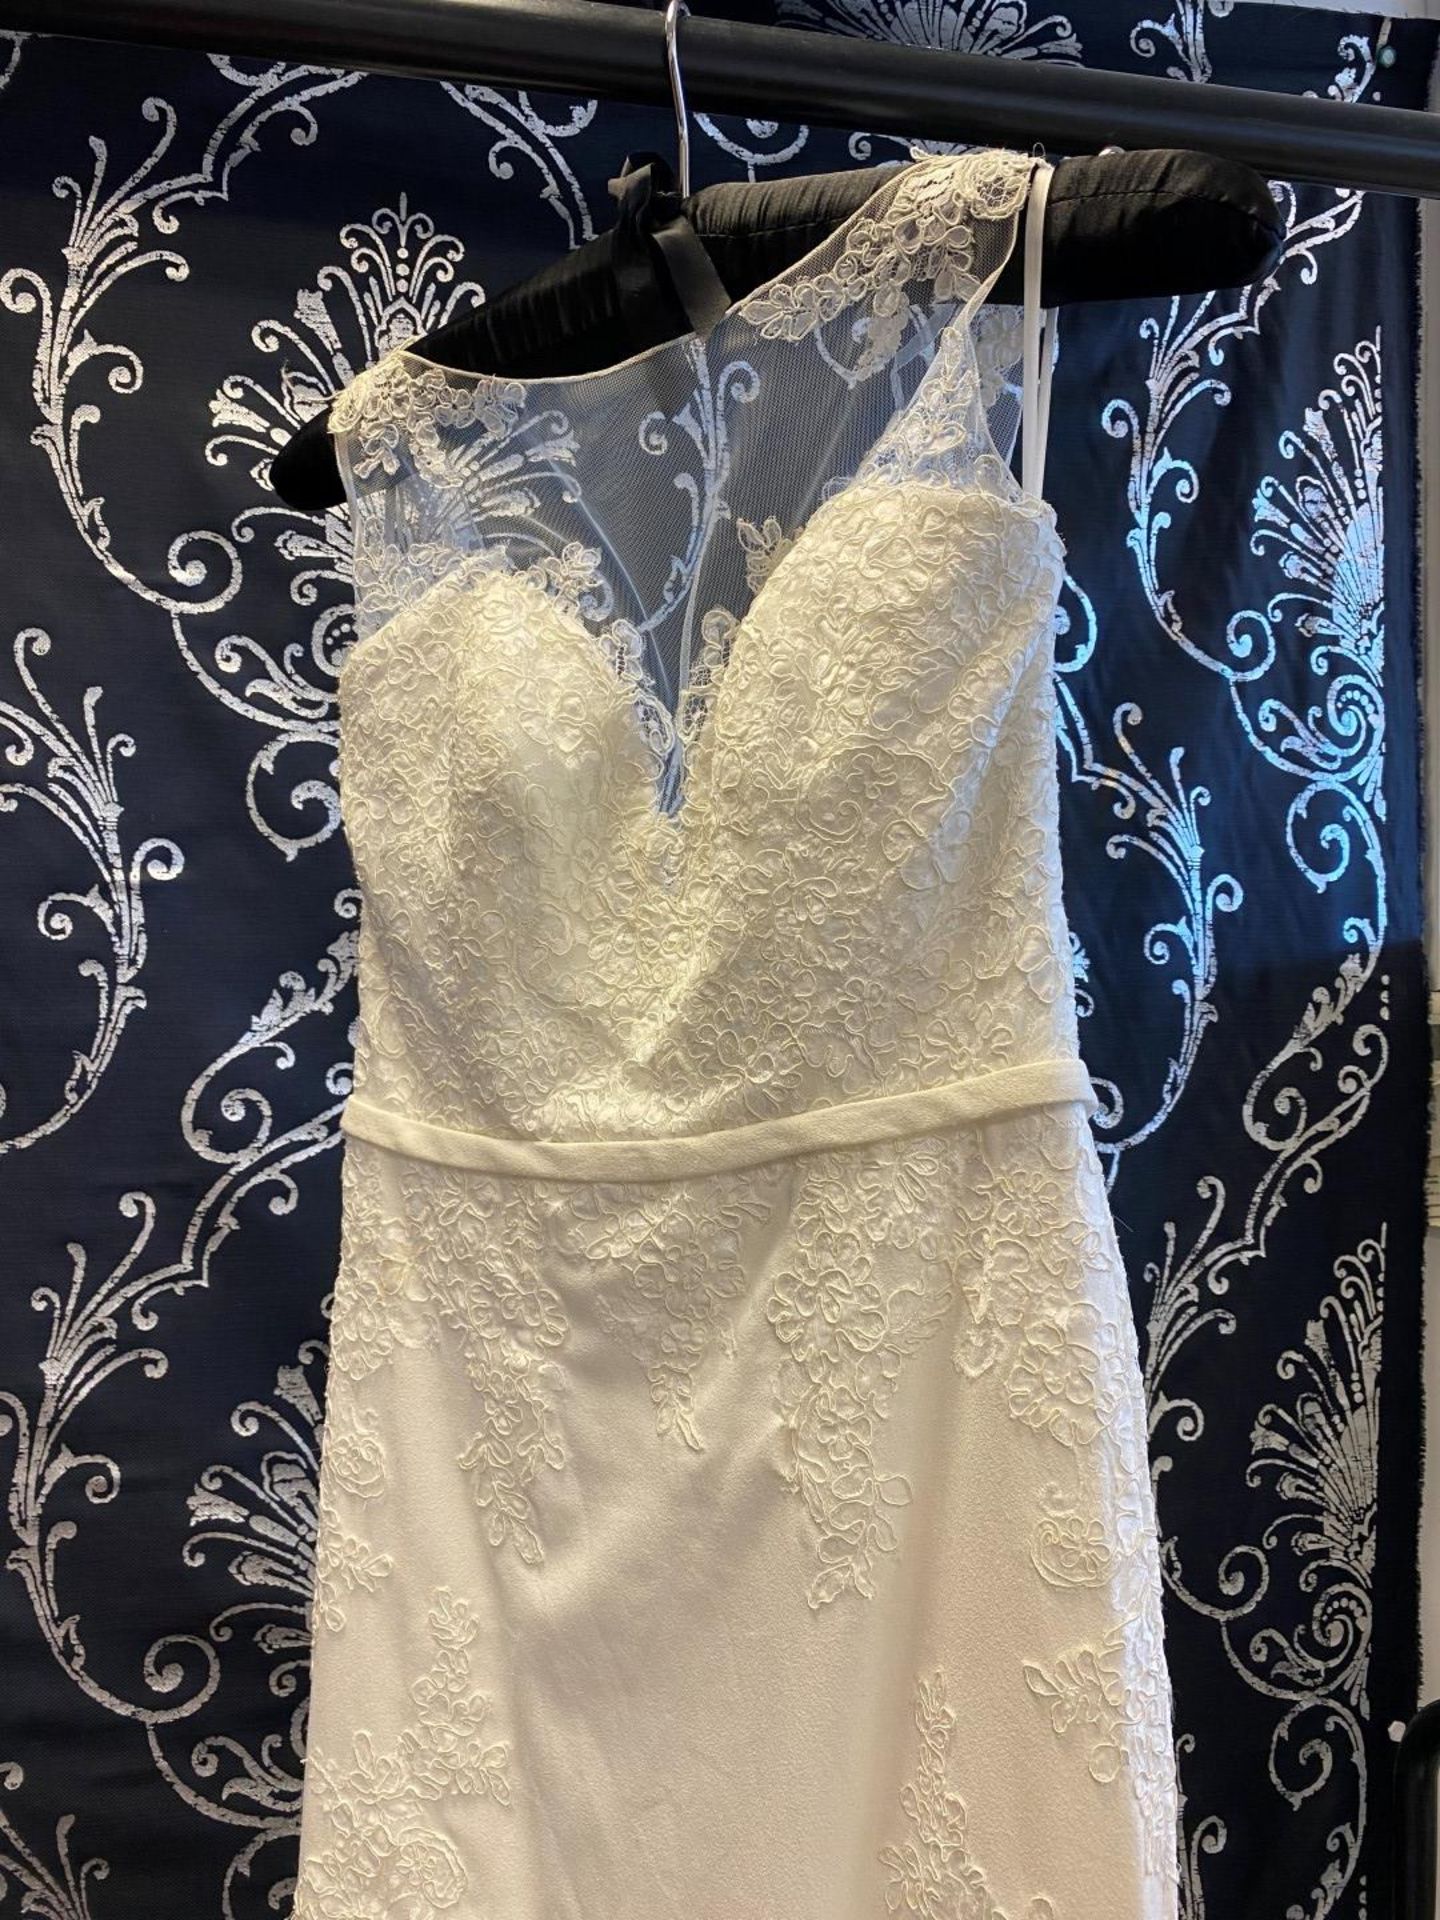 1 x MORI LEE Stunning Chiffon & Lace Biased Cut Designer Wedding Dress Bridal Gown RRP £1,500 UK 12 - Image 8 of 10